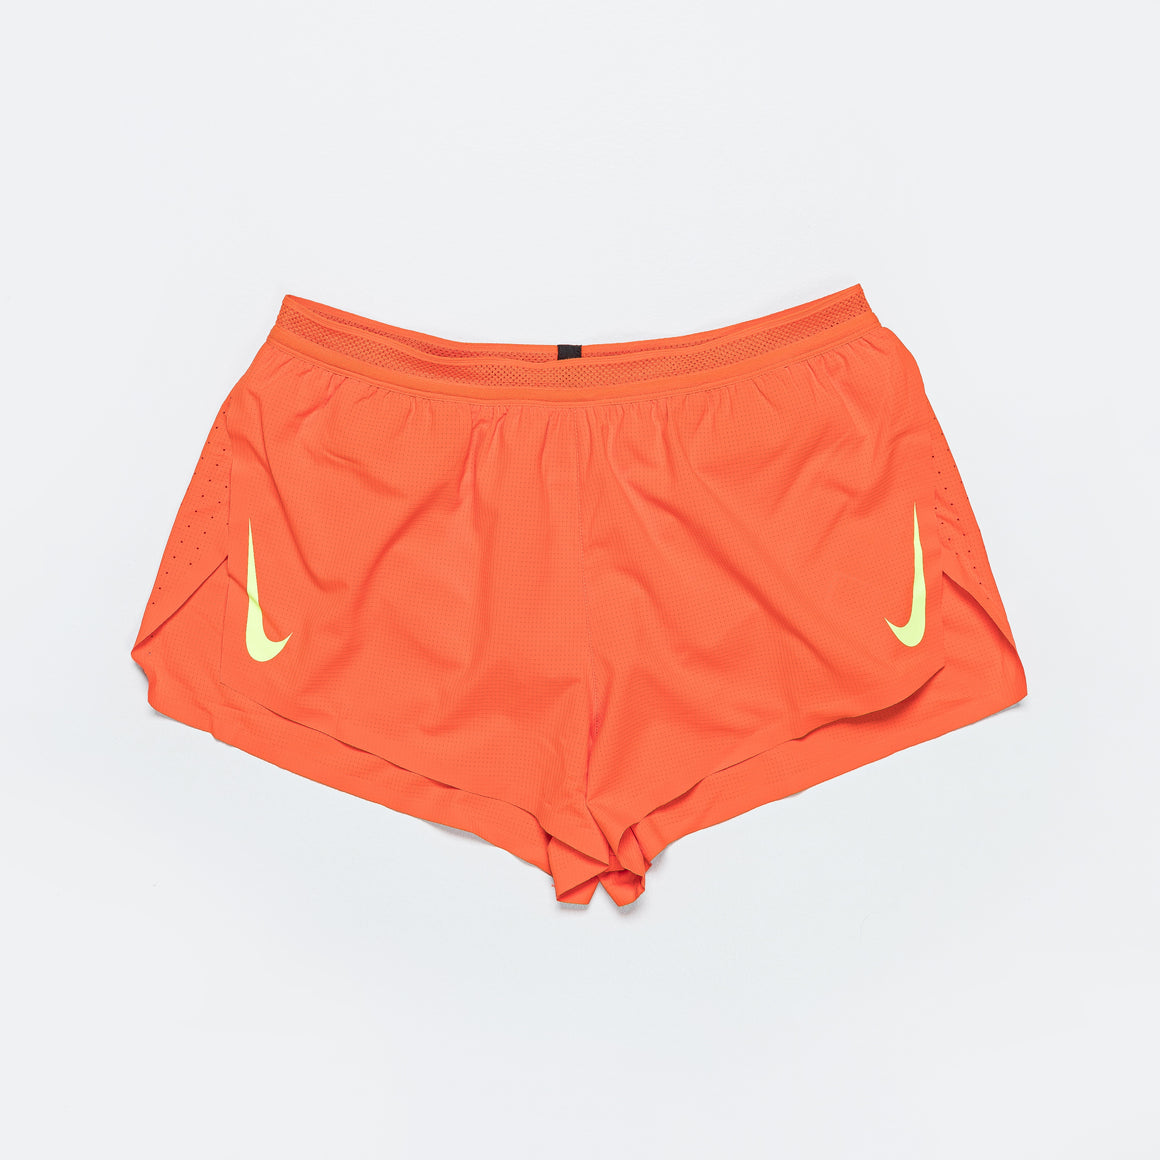 Nike AeroSwift 2" Short - Orange/Ghost | Up There Athletics